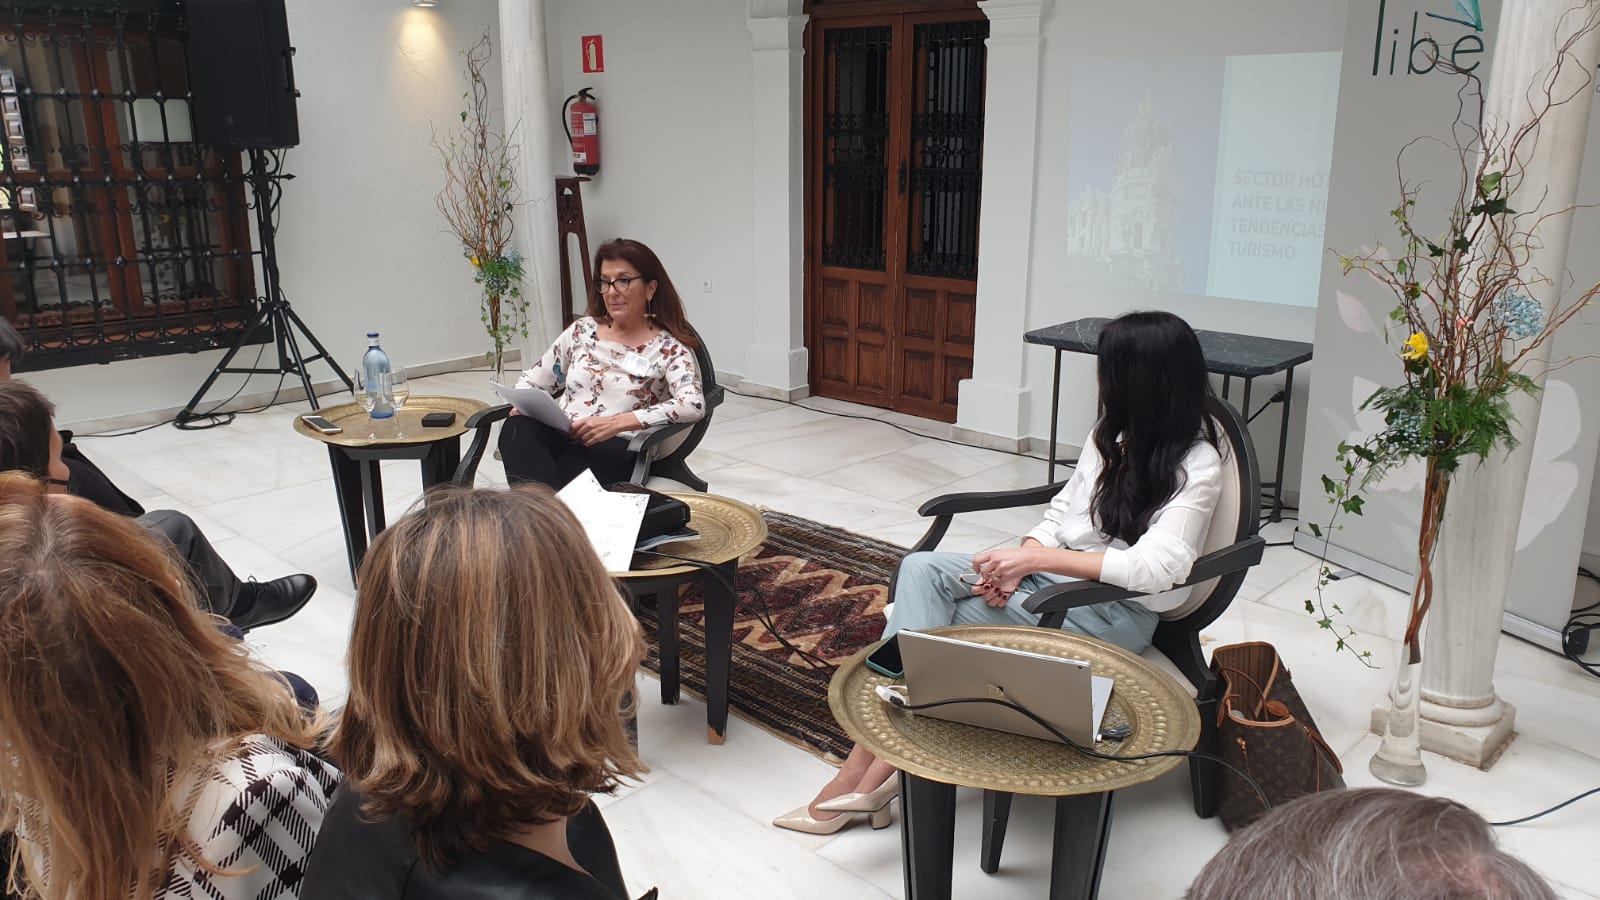 Mujeres empresarias y profesionales inician en Granada el «Vuelo de la Libélula», un foro para fomentar sinergias y potenciar proyectos